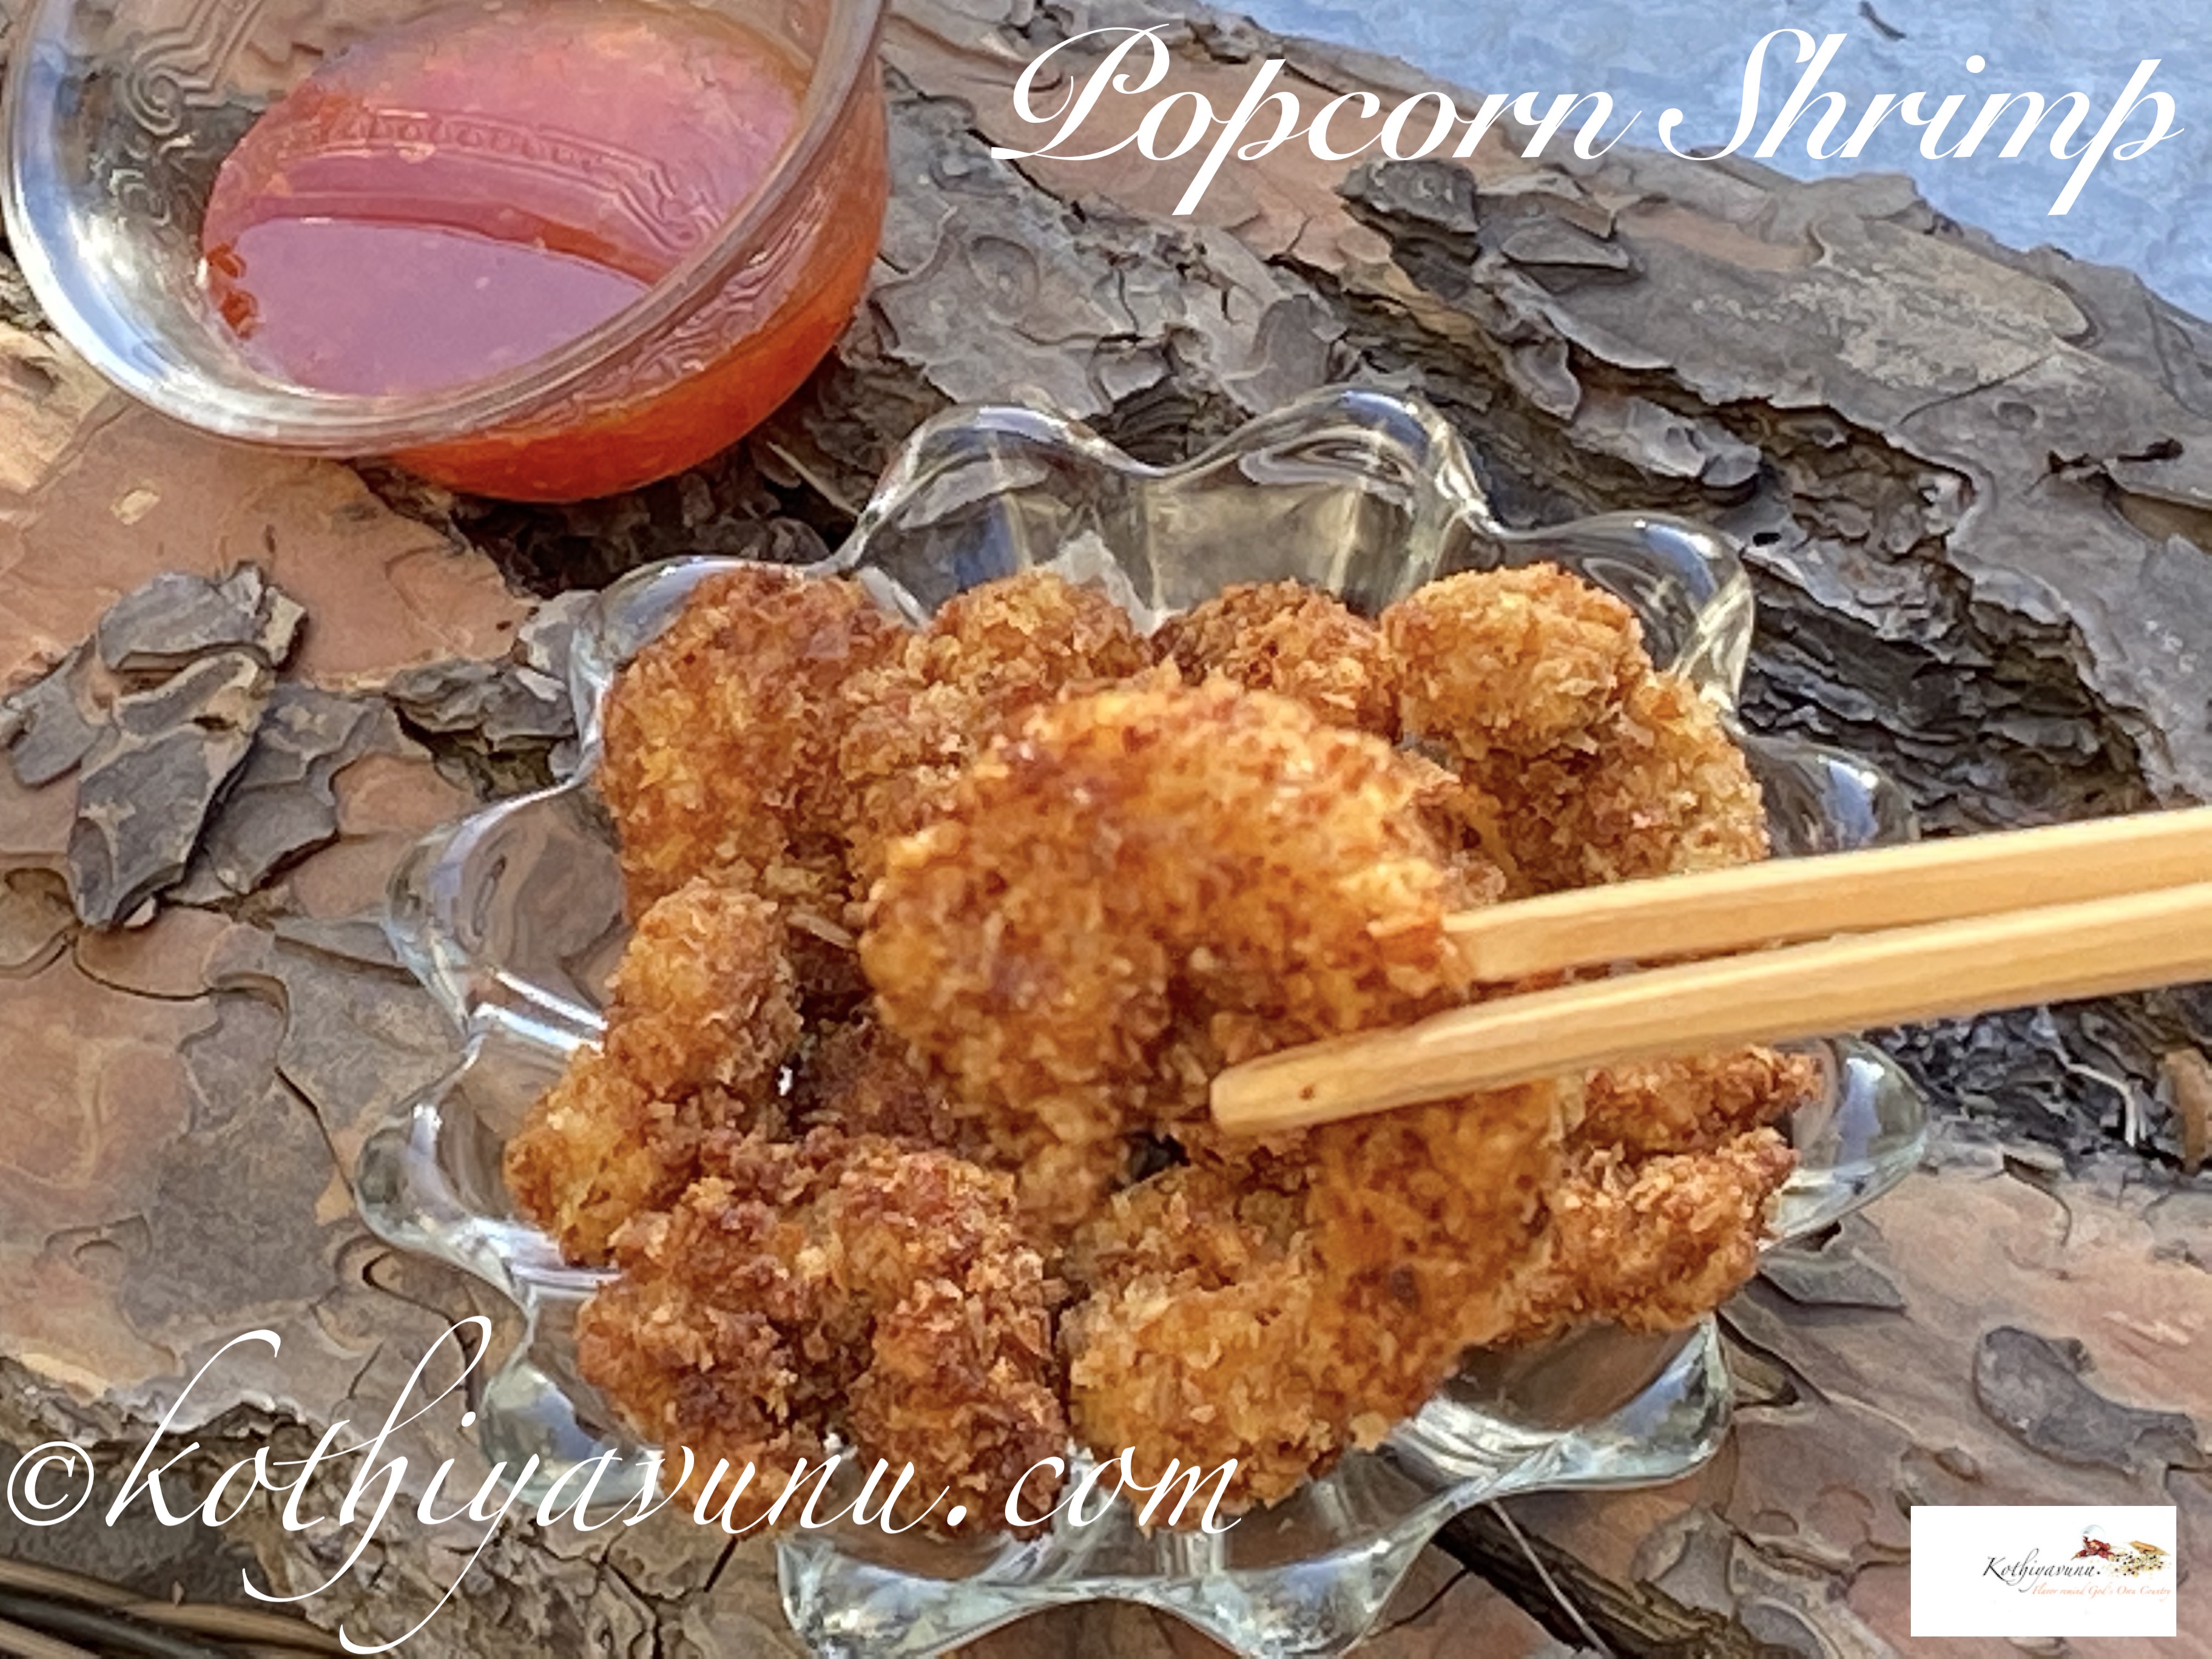 Popcorn Shrimp-Prawns Popcorn|kothiyavunu.com